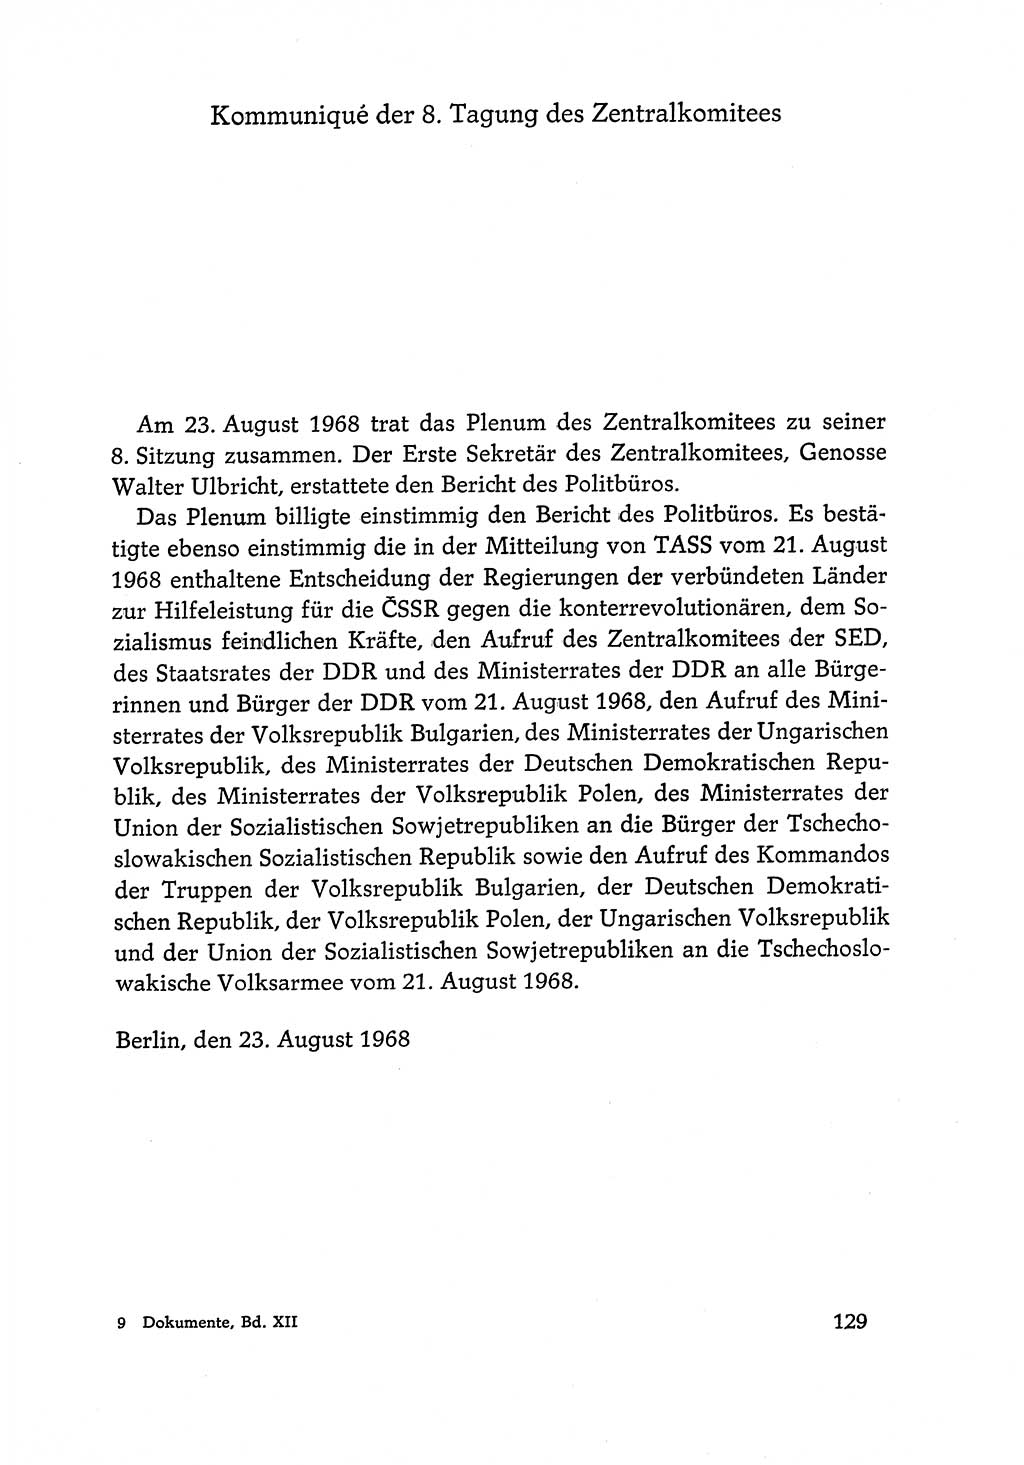 Dokumente der Sozialistischen Einheitspartei Deutschlands (SED) [Deutsche Demokratische Republik (DDR)] 1968-1969, Seite 129 (Dok. SED DDR 1968-1969, S. 129)